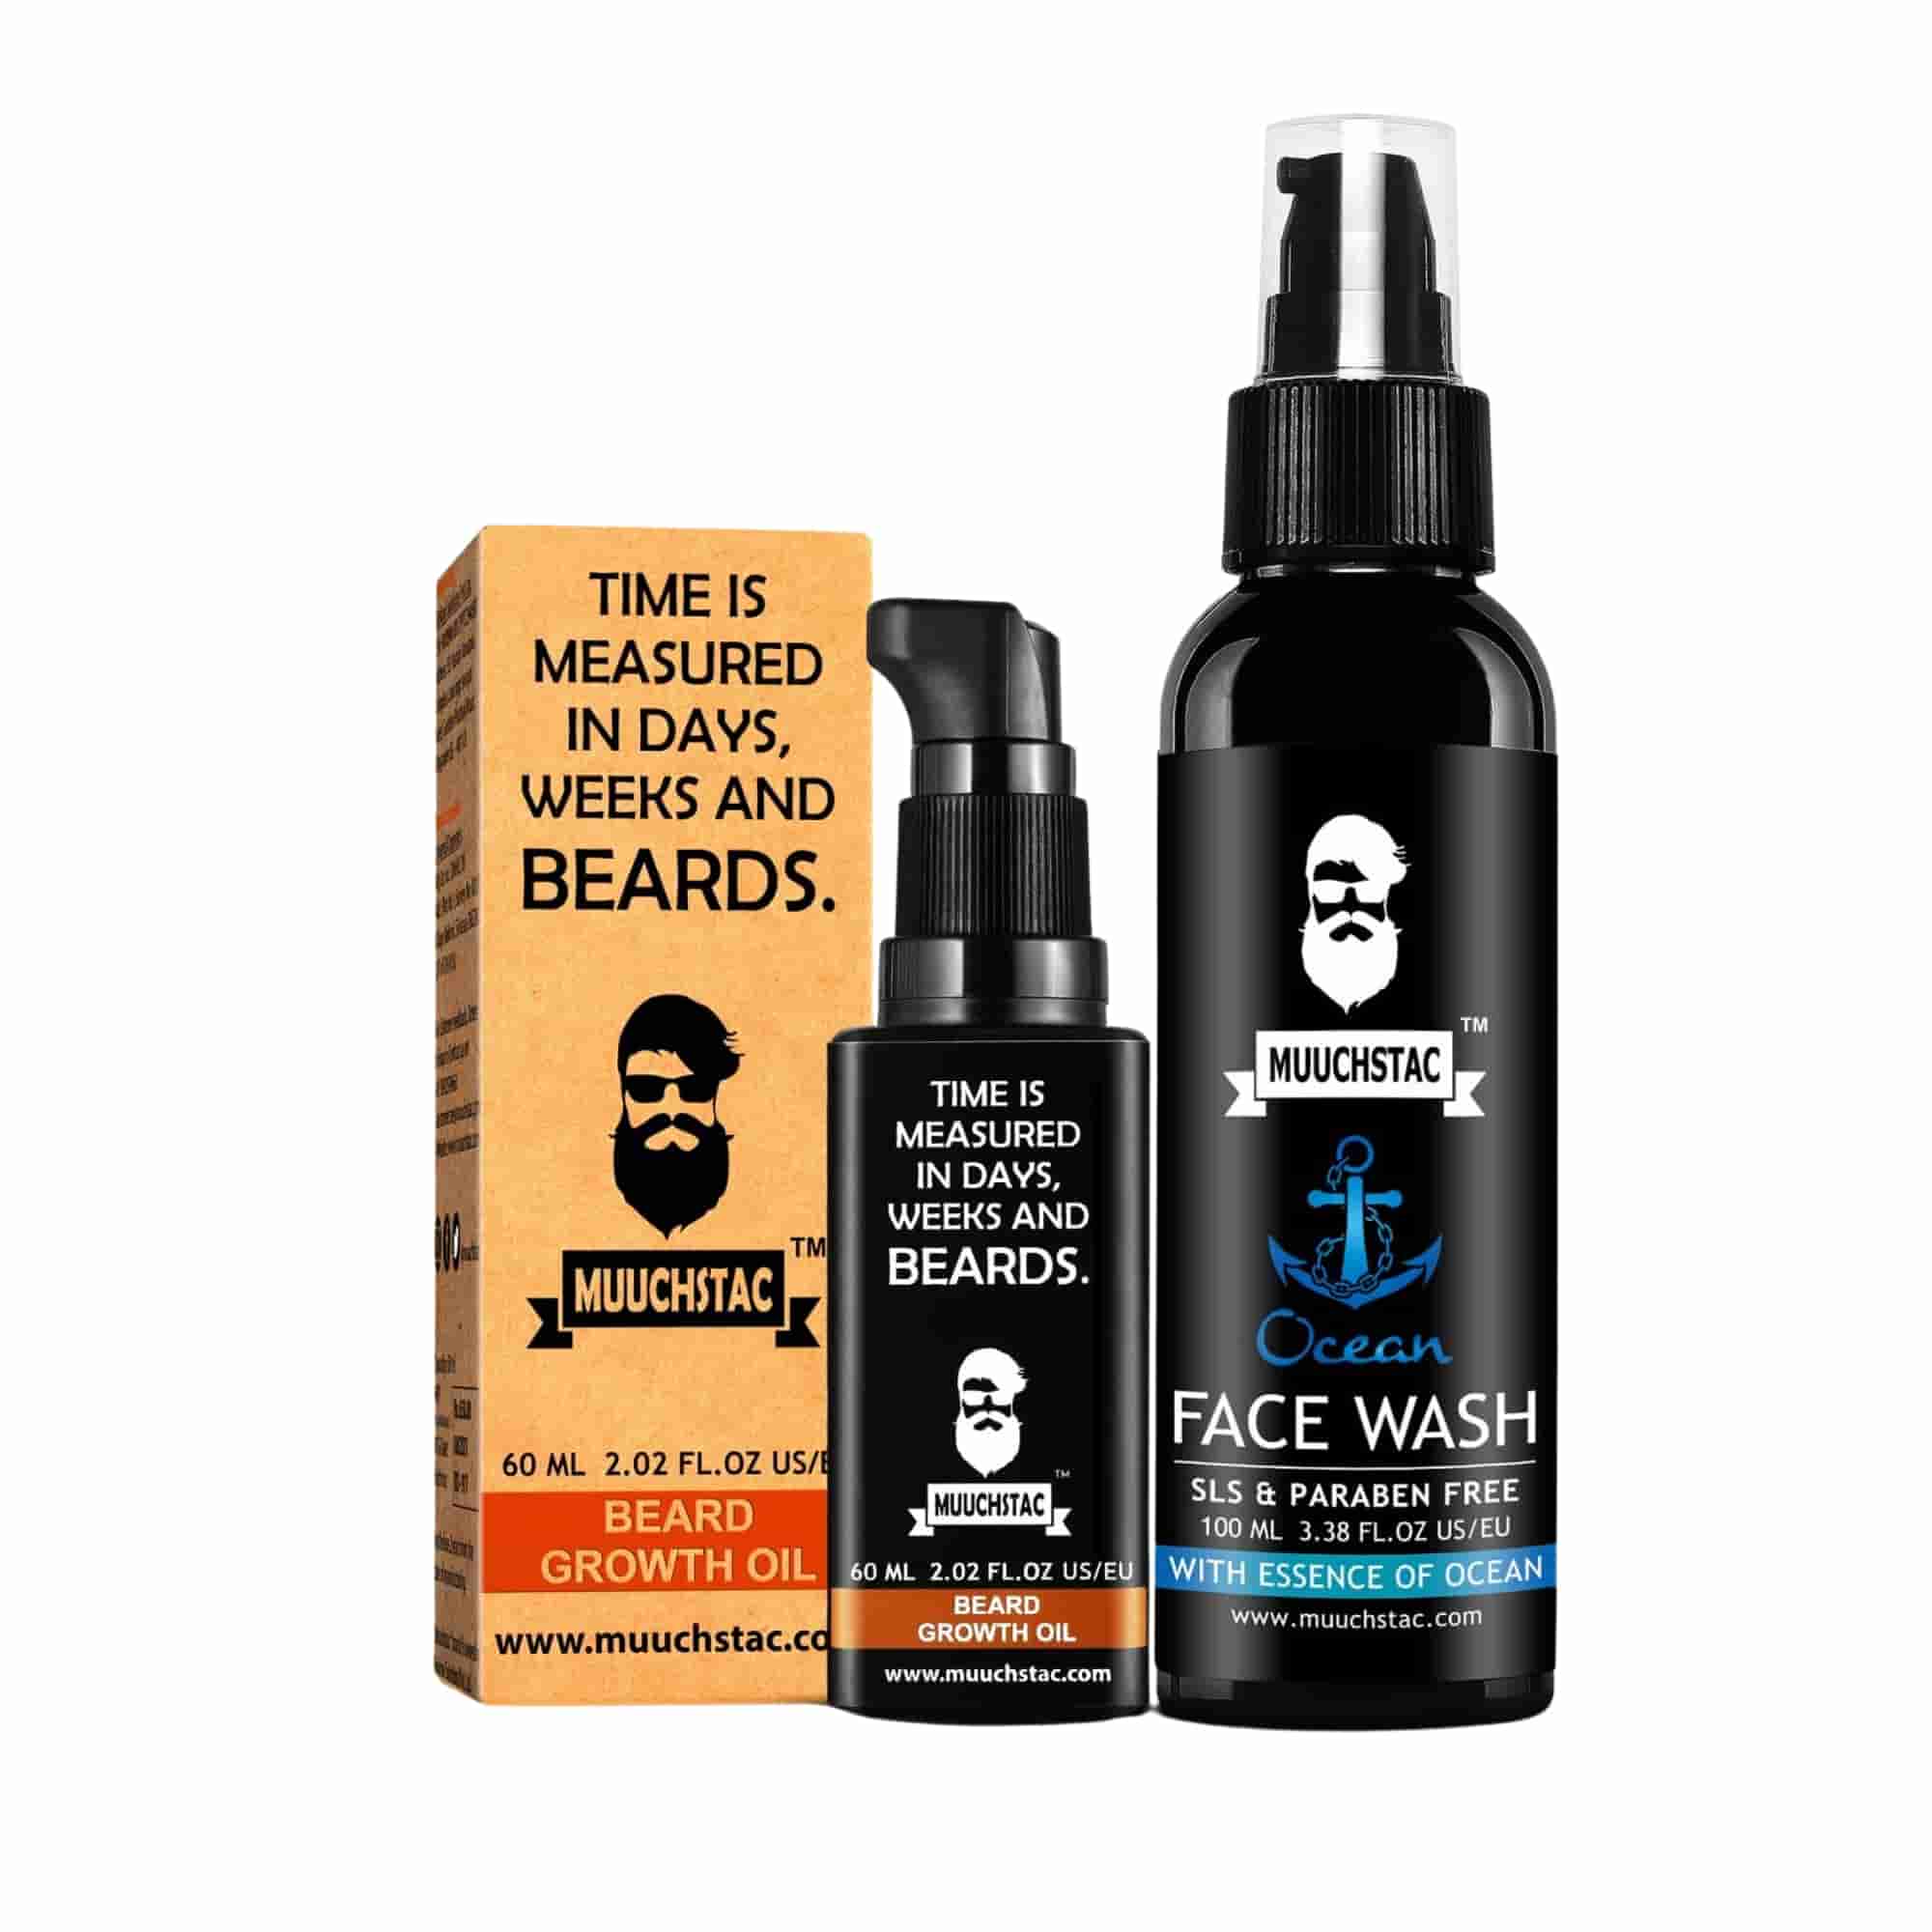 Muuchstac Beard Growth Oil + Ocean Face Wash